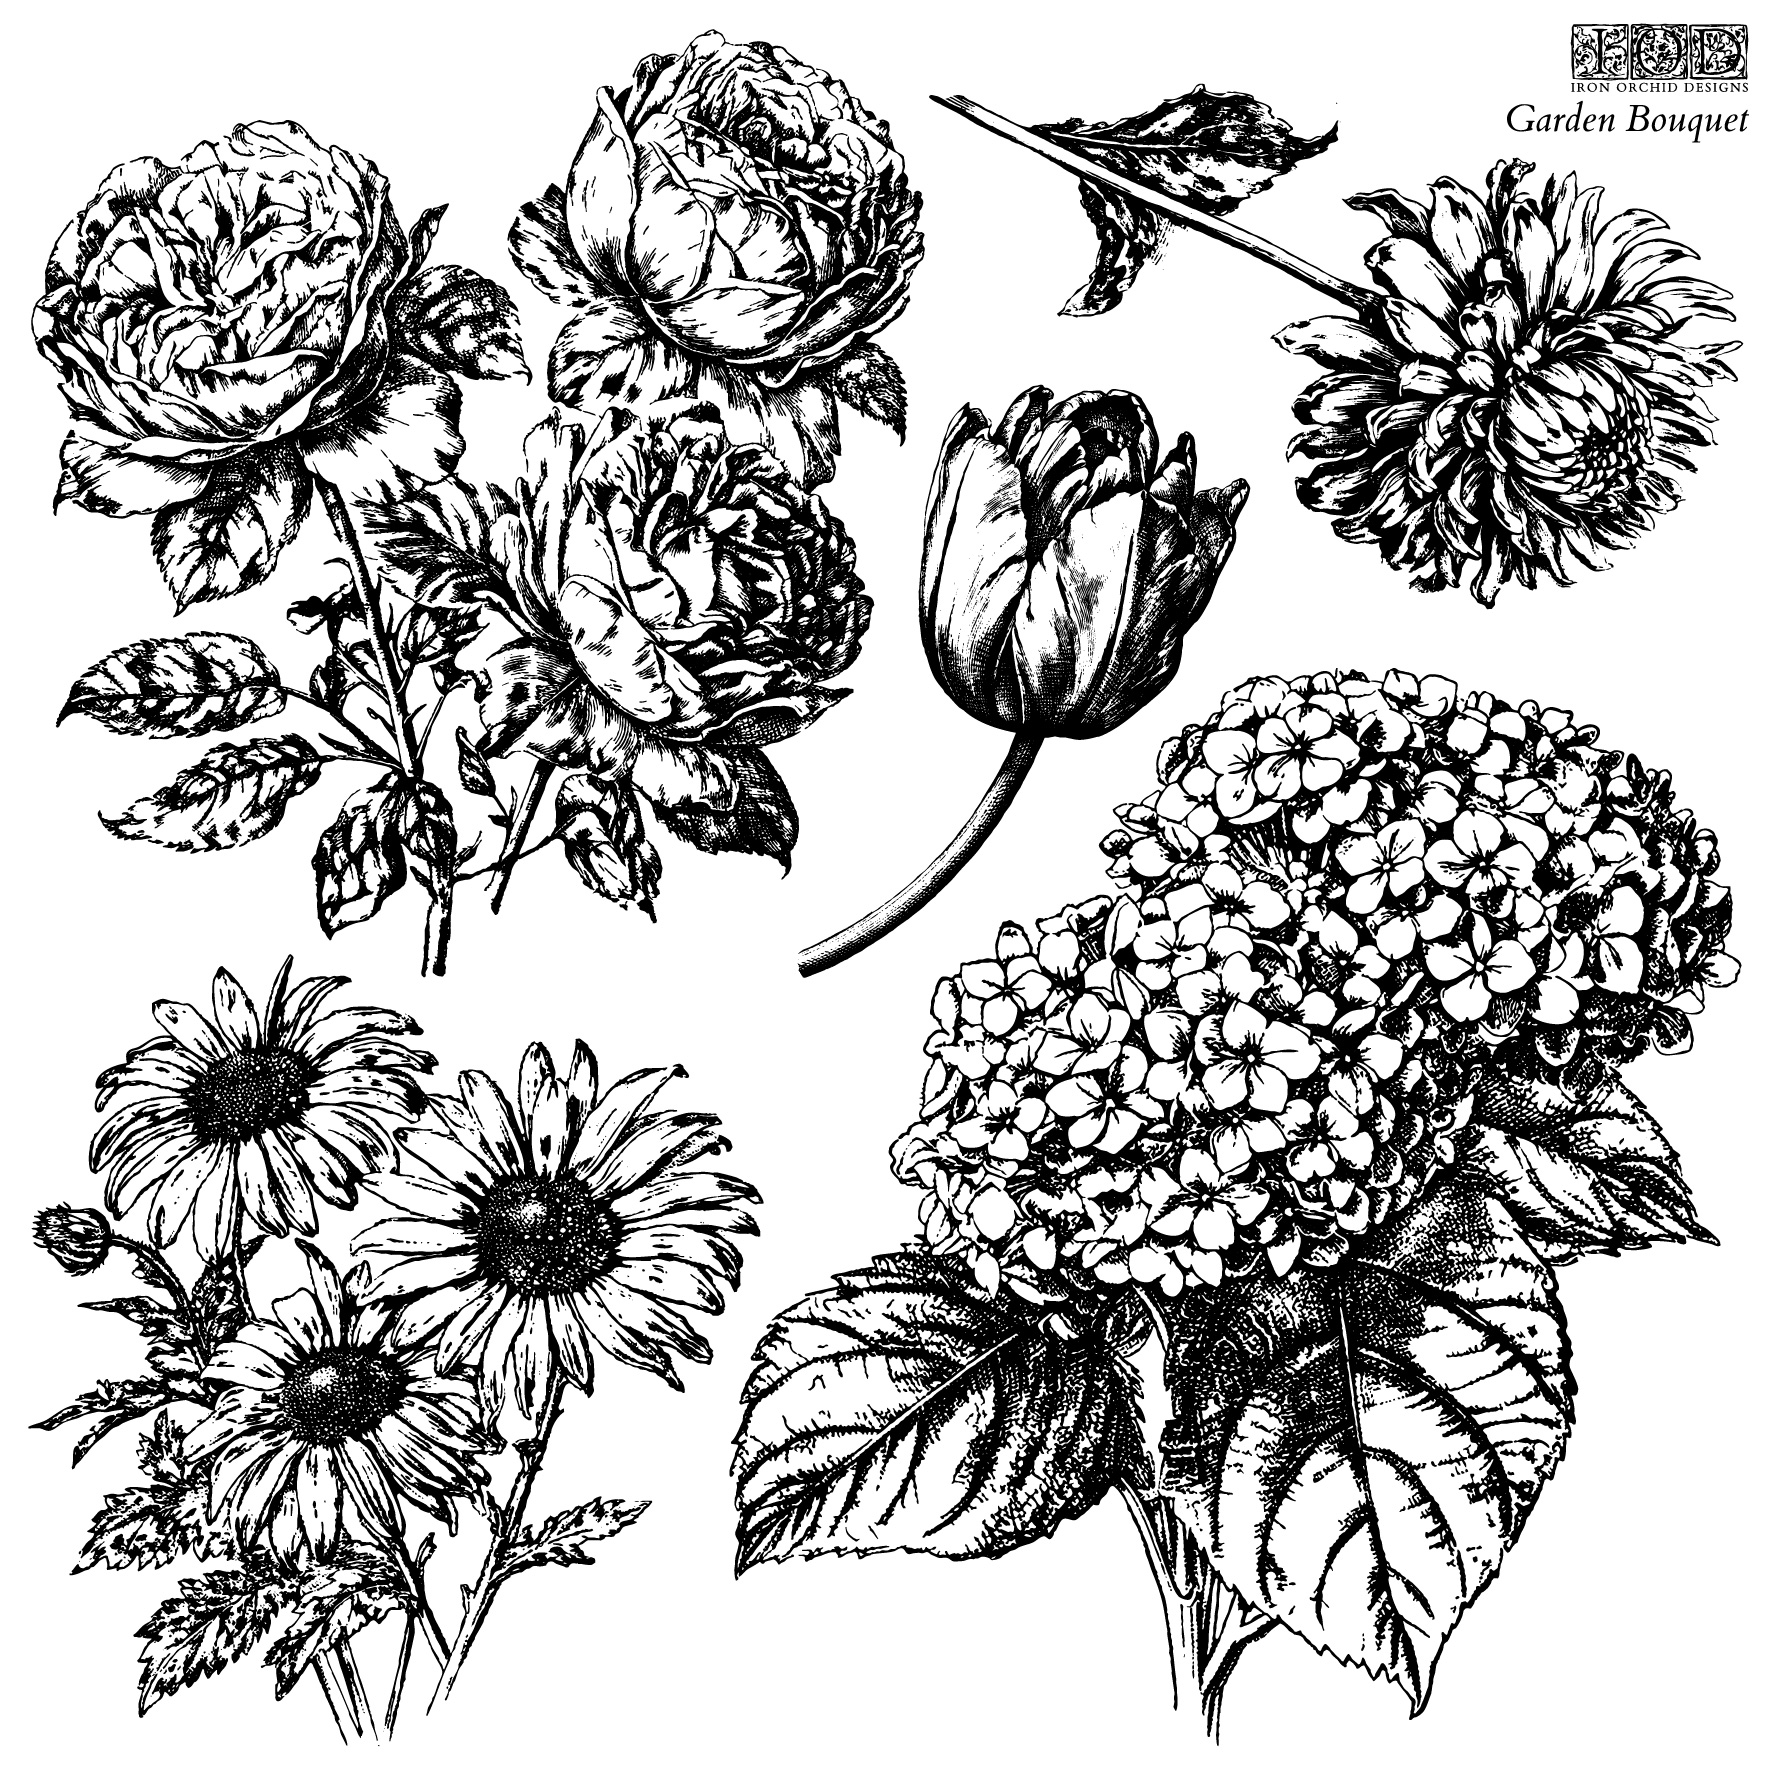 Copy of IOD-STA-GAR Garden Bouquet stamp artwork